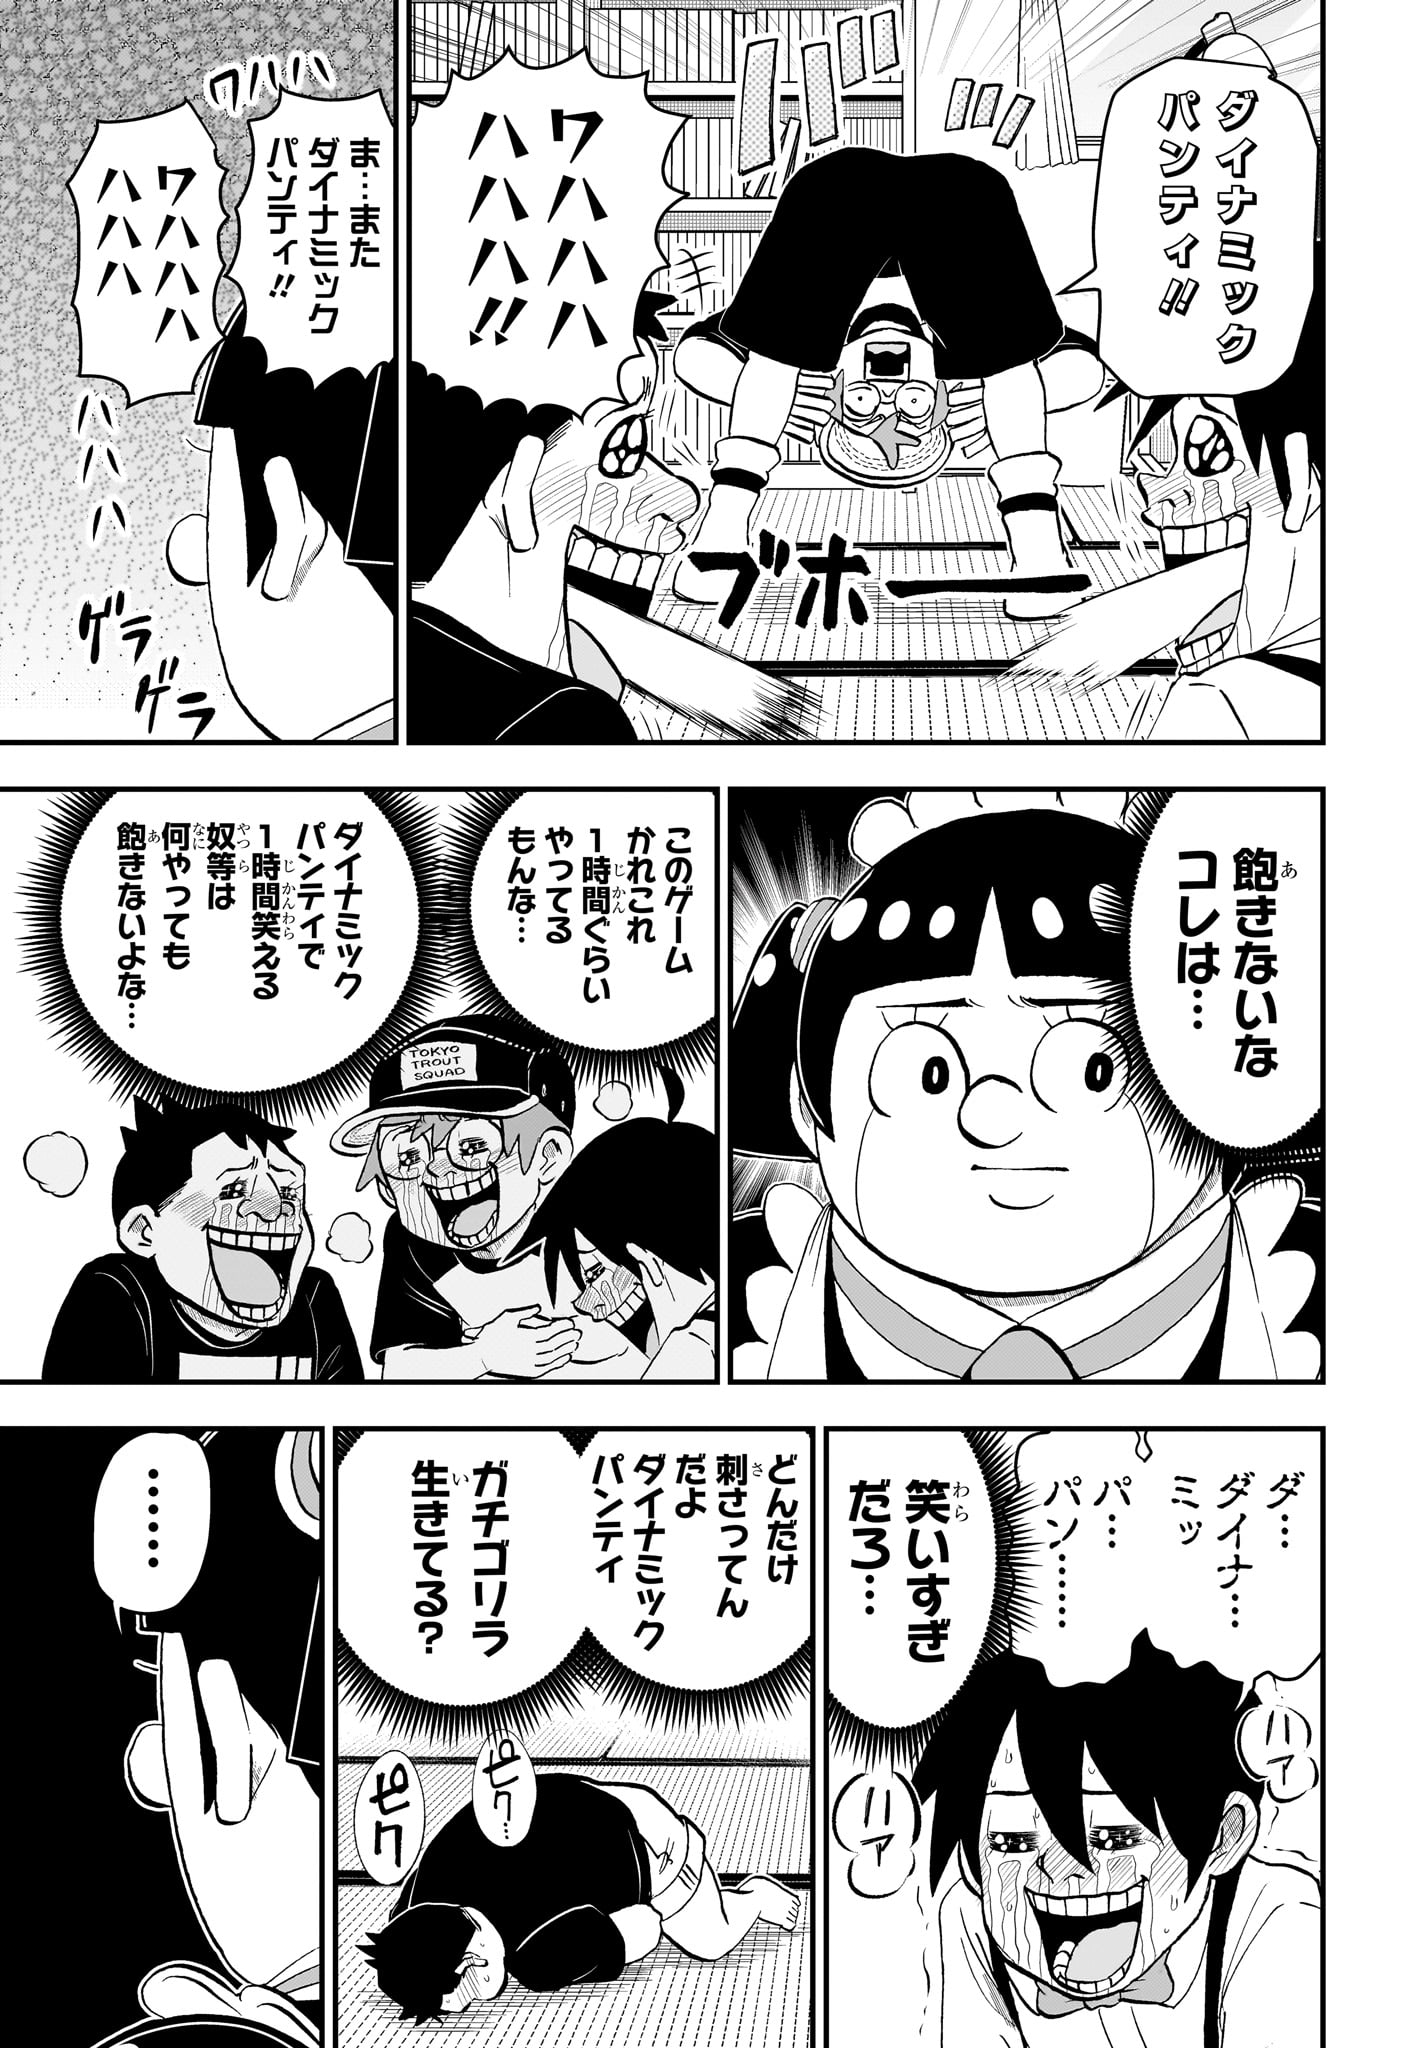 Boku to Roboko - Chapter 186 - Page 3